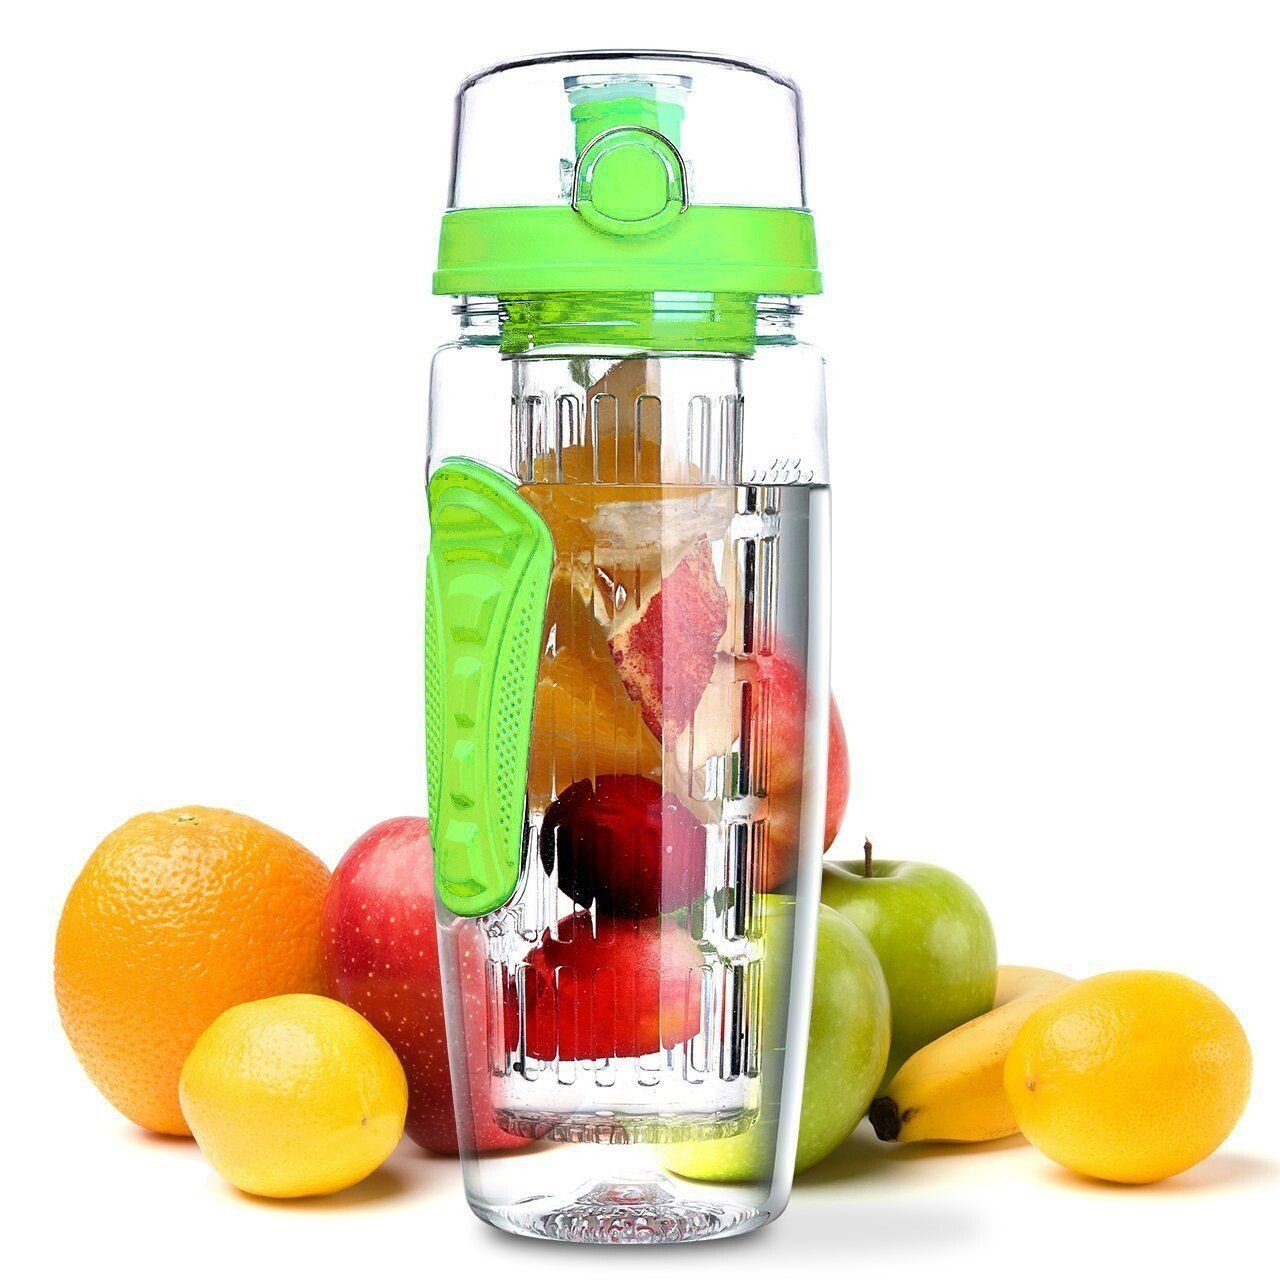 LA VAGUE Trinkflasche VITALITY trinkflasche mit einsatz, Trinkflasche mit Früchtesieb für perfekt aromatisierte Getränke grün